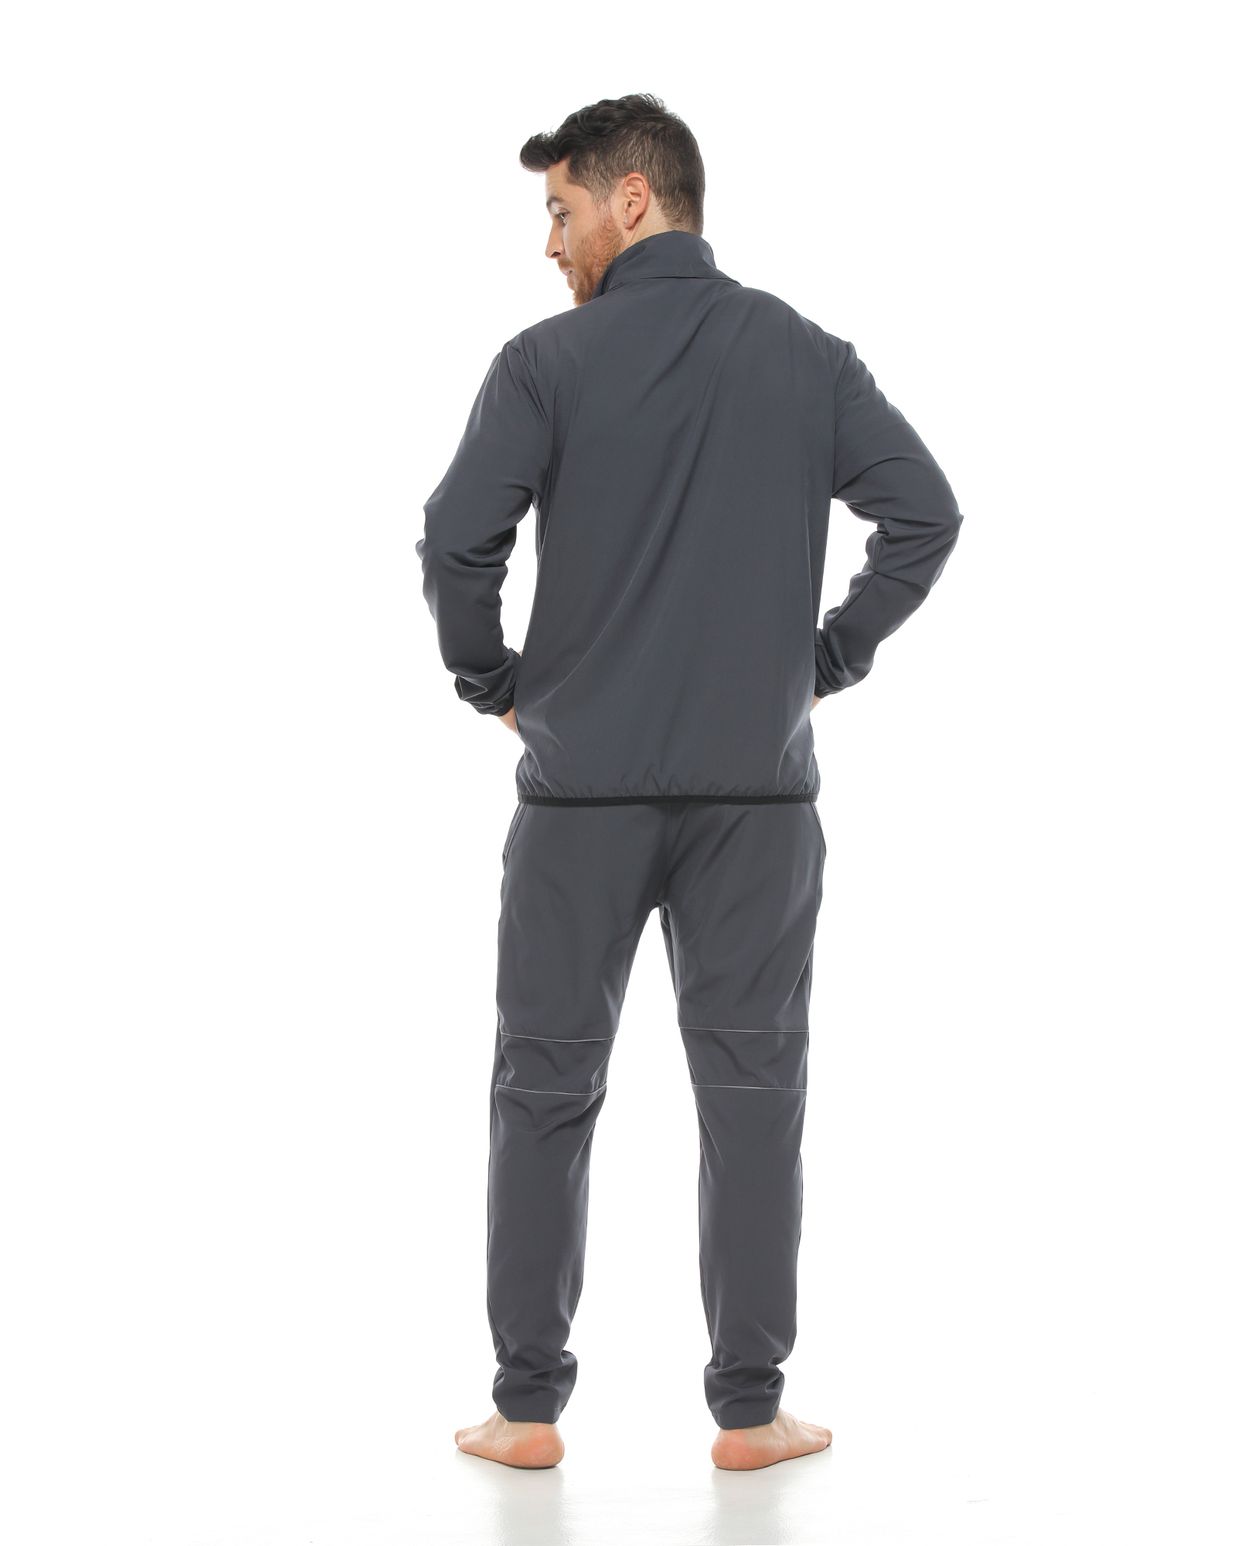 Modelo con pantalon deportivo color gris oscuro para hombre y chaqueta color gris oscuro parte trasera